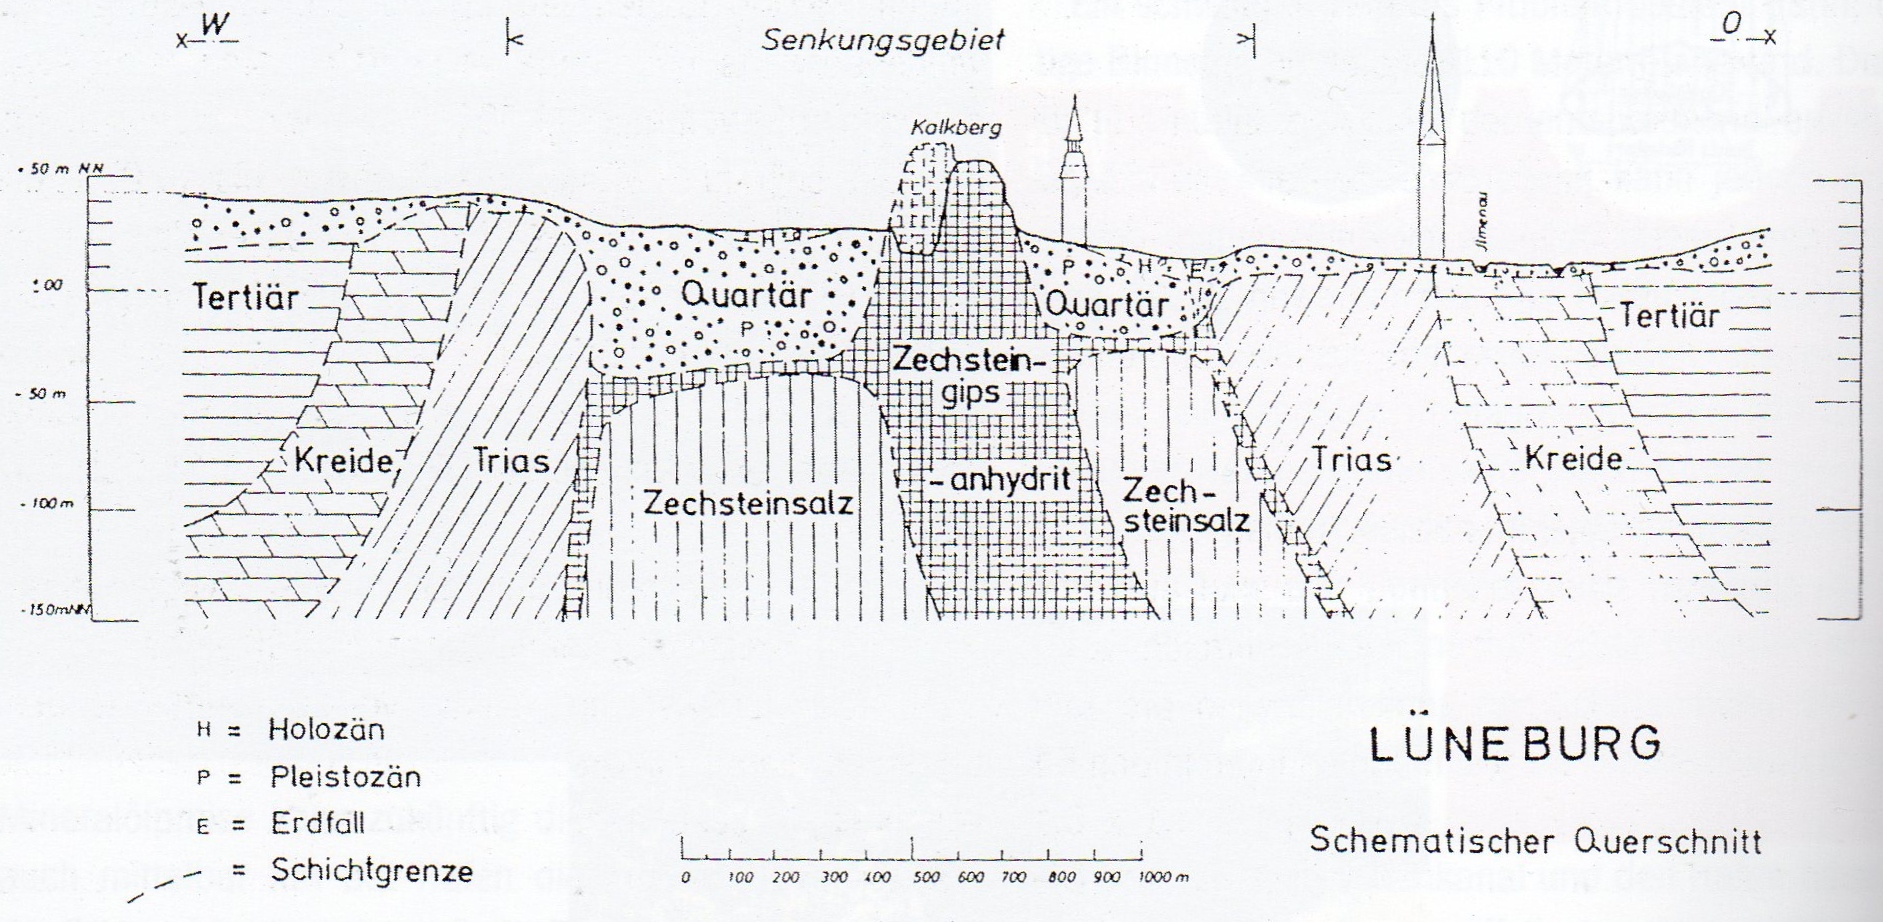 Schematischer Querschnitt durch den Salzstock (vereinfachte Darstellung) © Schmidek, Stadtbauamt Lüneburg